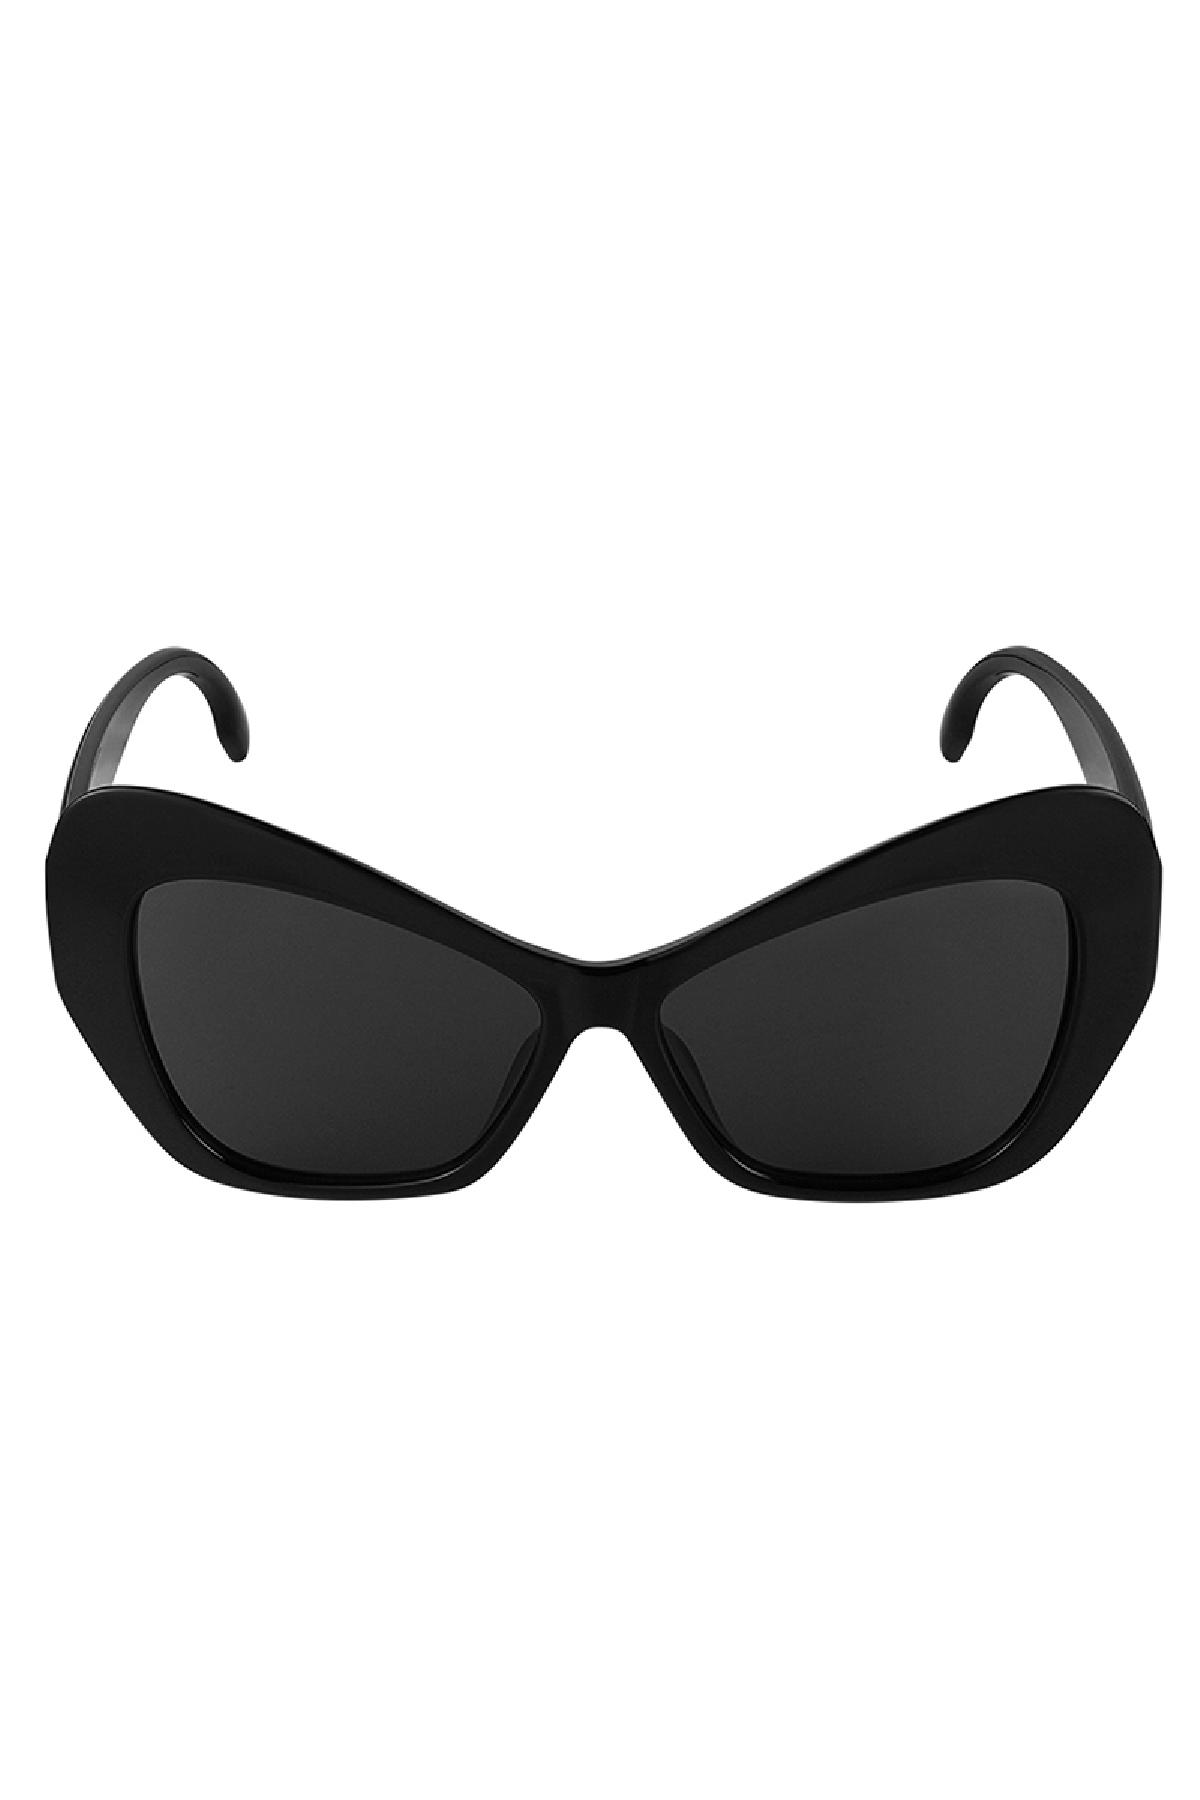 Dichiarazione sugli occhiali da sole Black PC One size h5 Immagine3